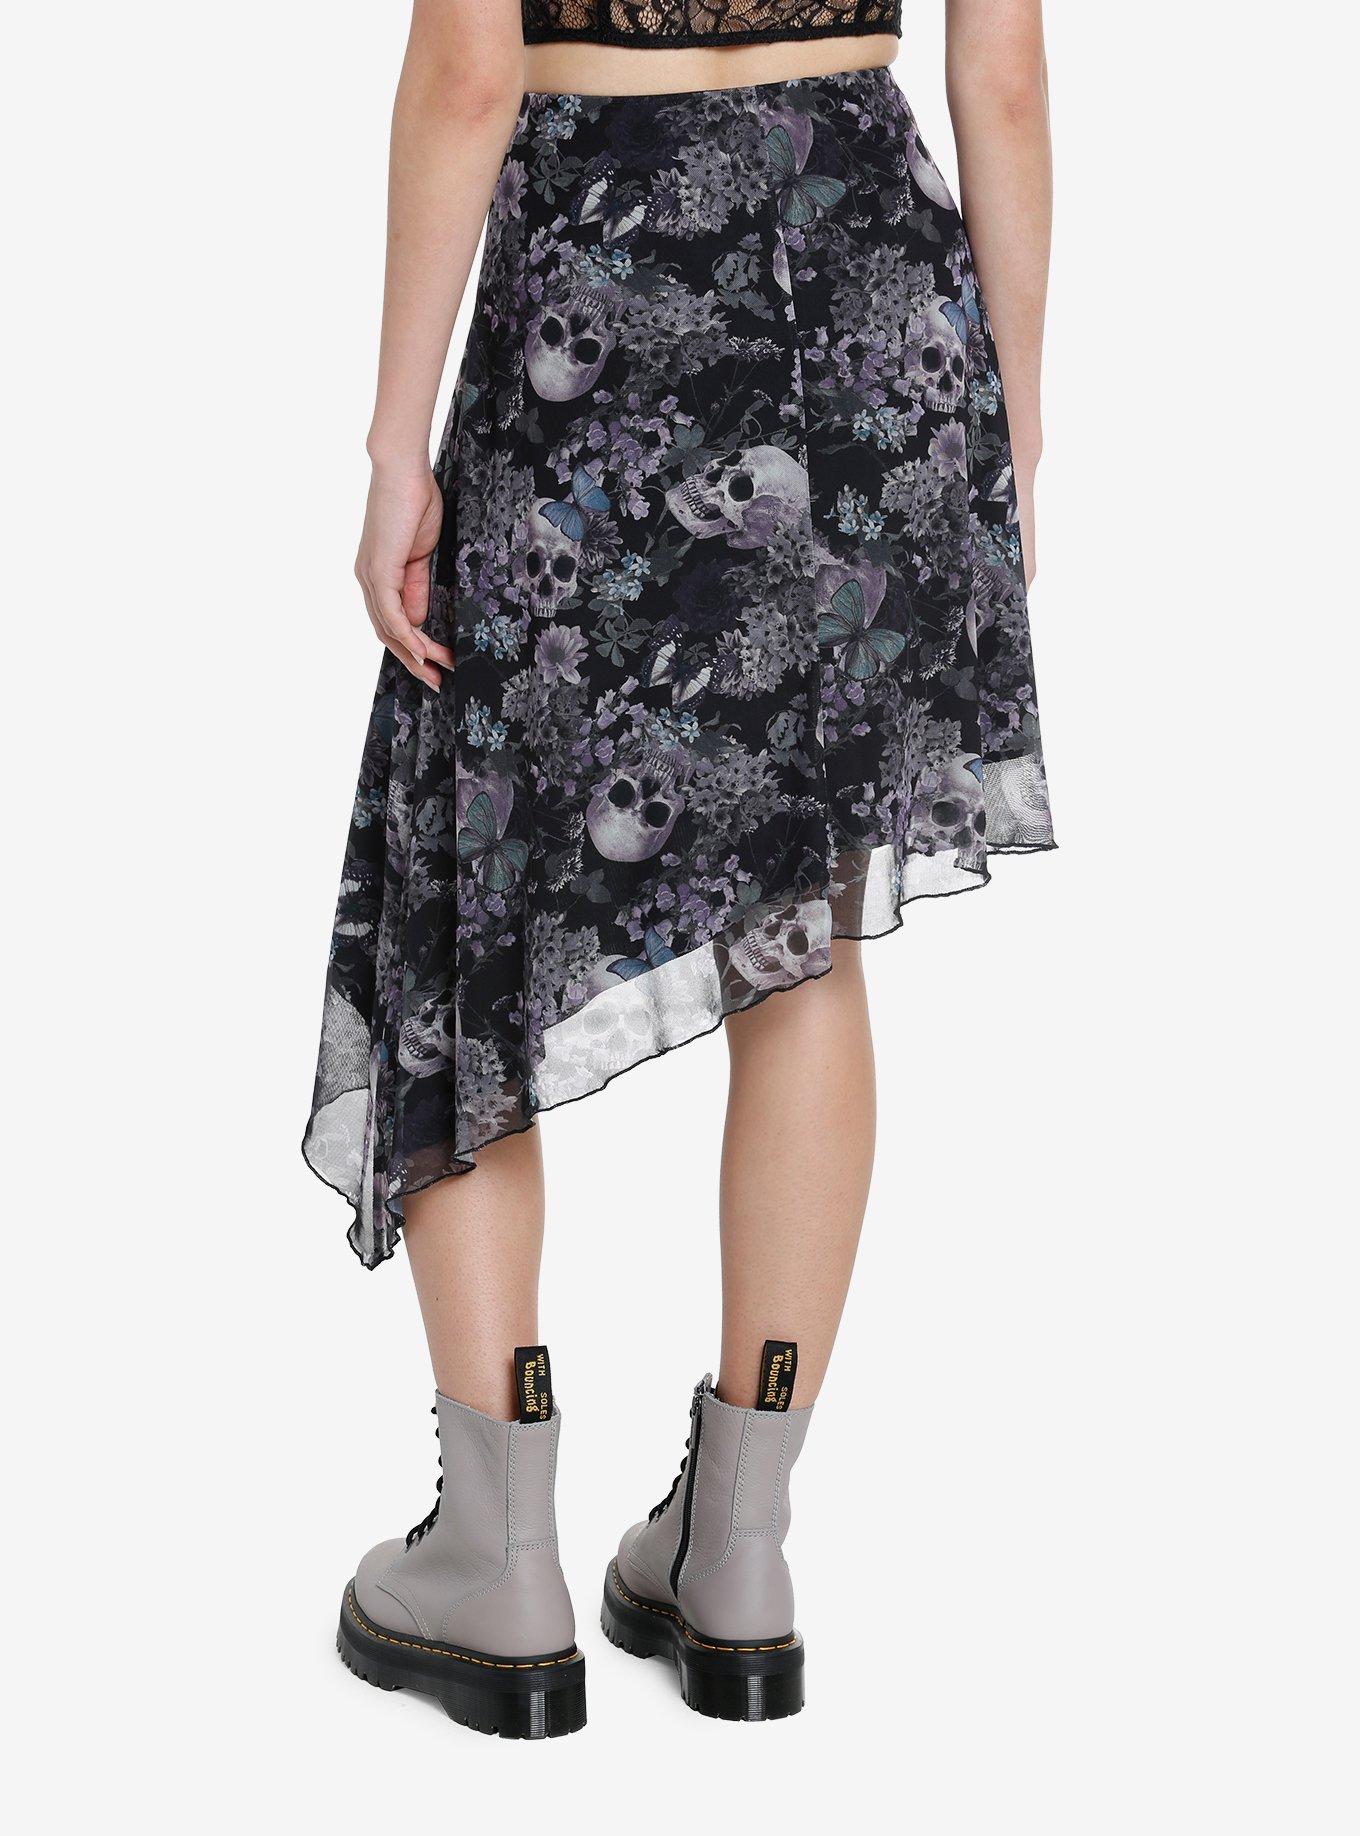 Thorn & Fable Skulls & Flowers Asymmetrical Midi Skirt, PURPLE, alternate